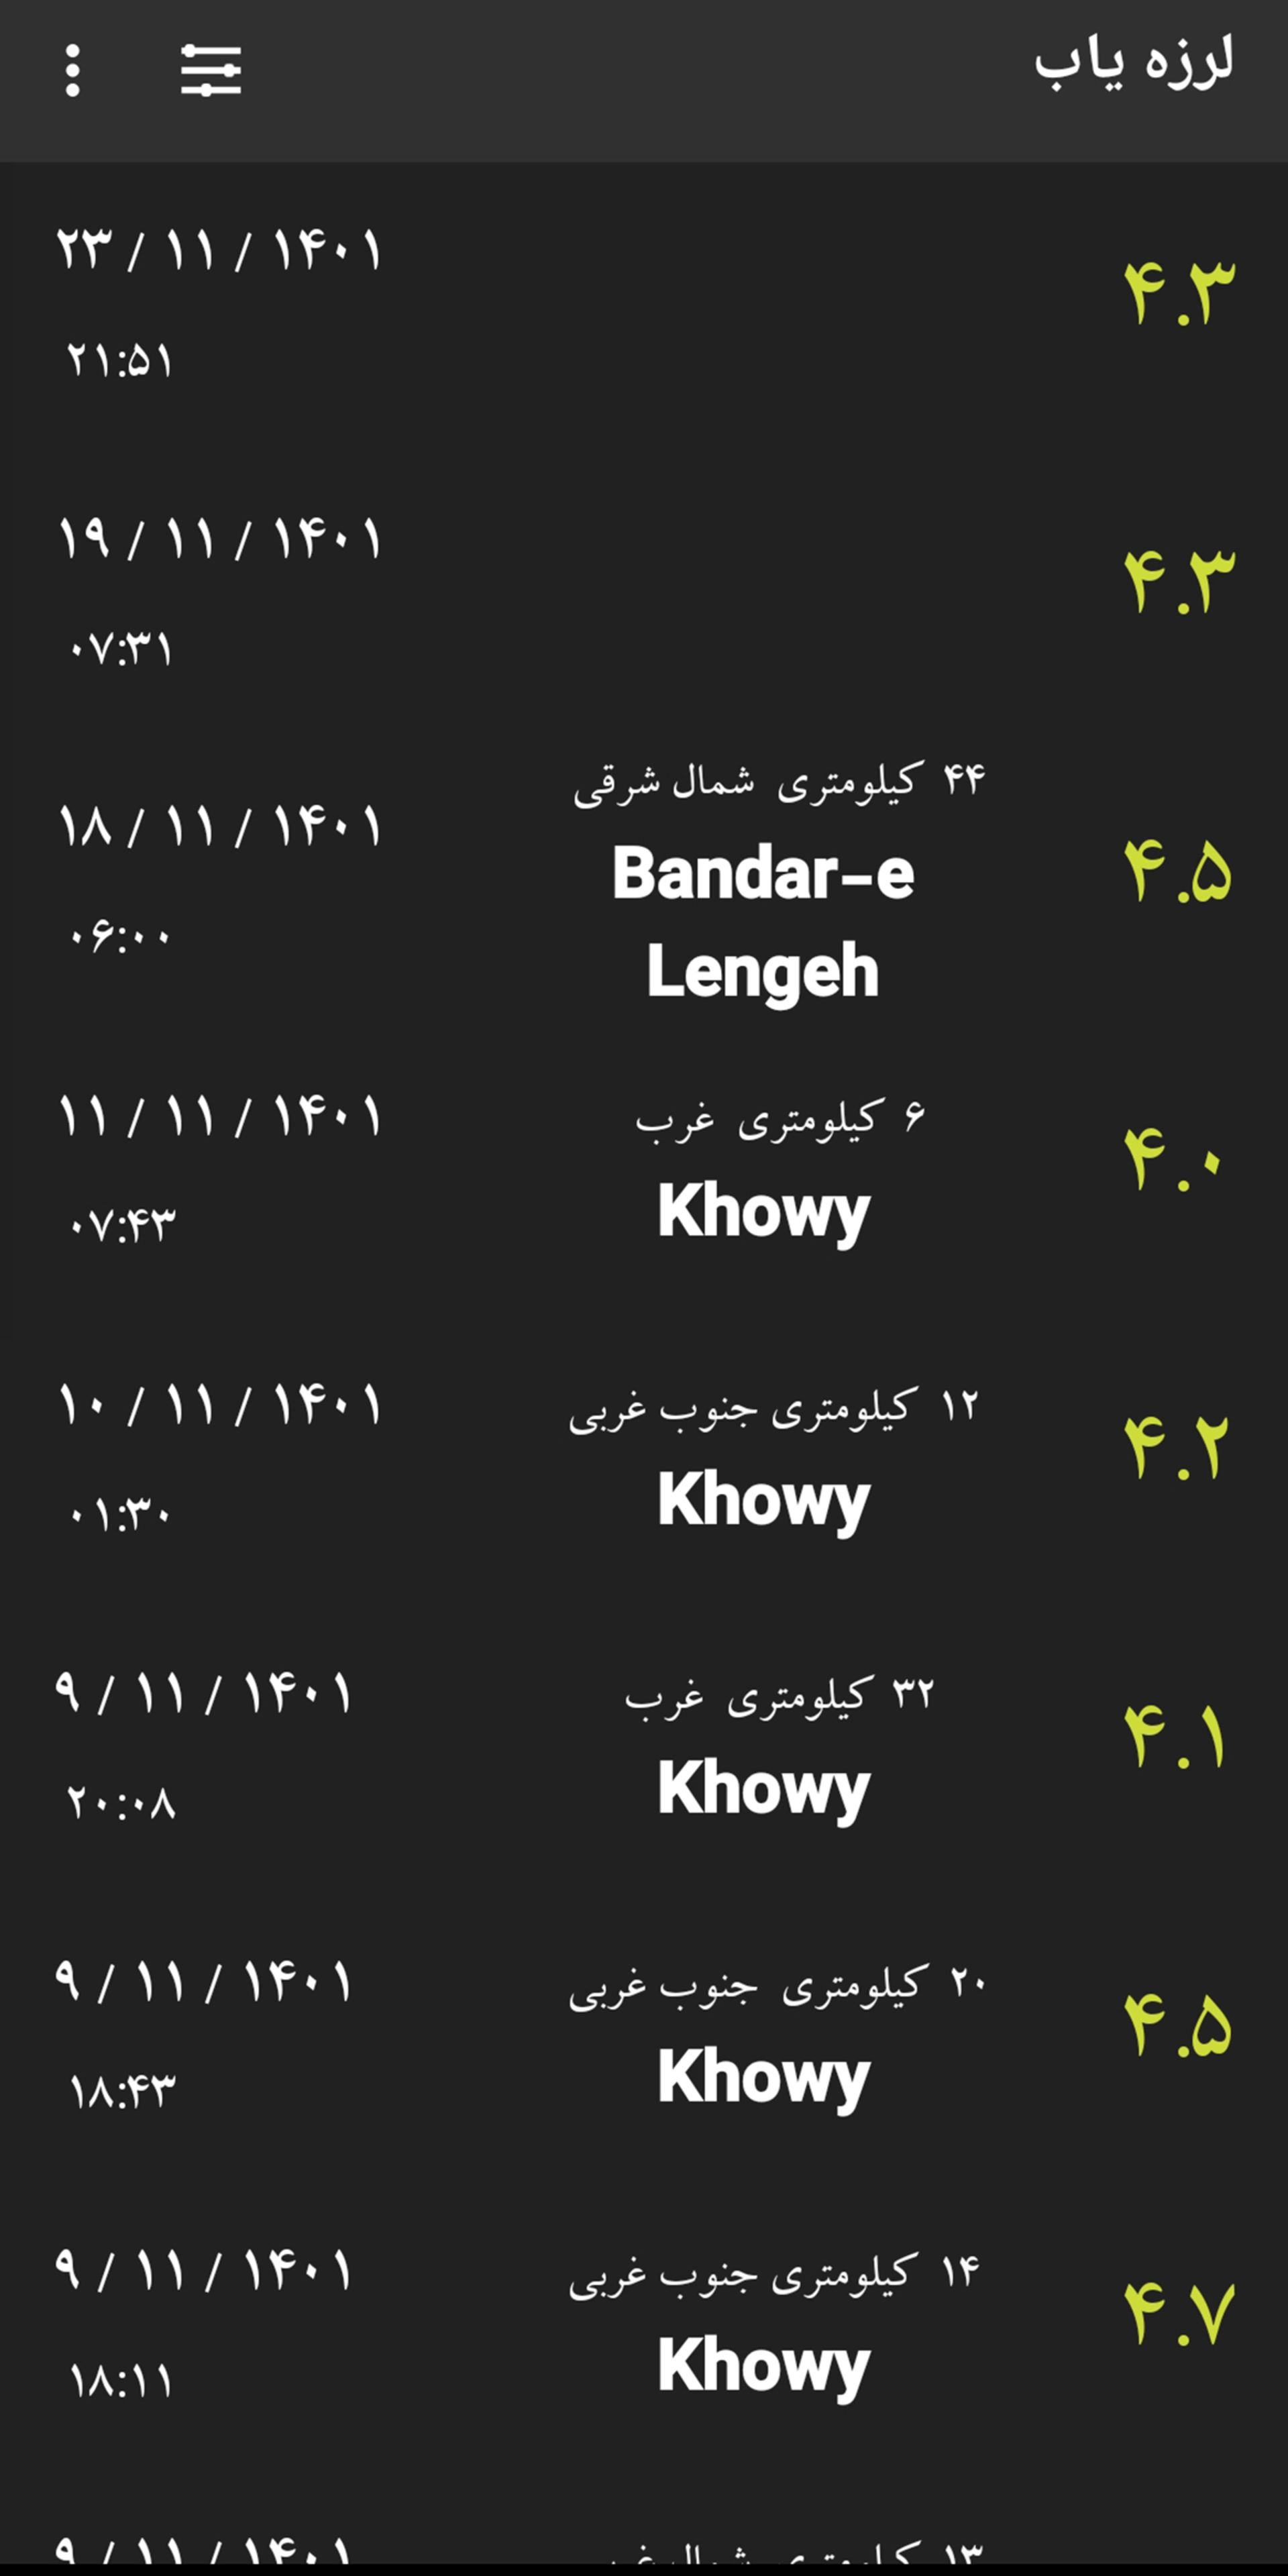 مرجع متخصصين ايران صفحه اطلاعات زلزله هاي رخ داده در مكان هاي مختلف 